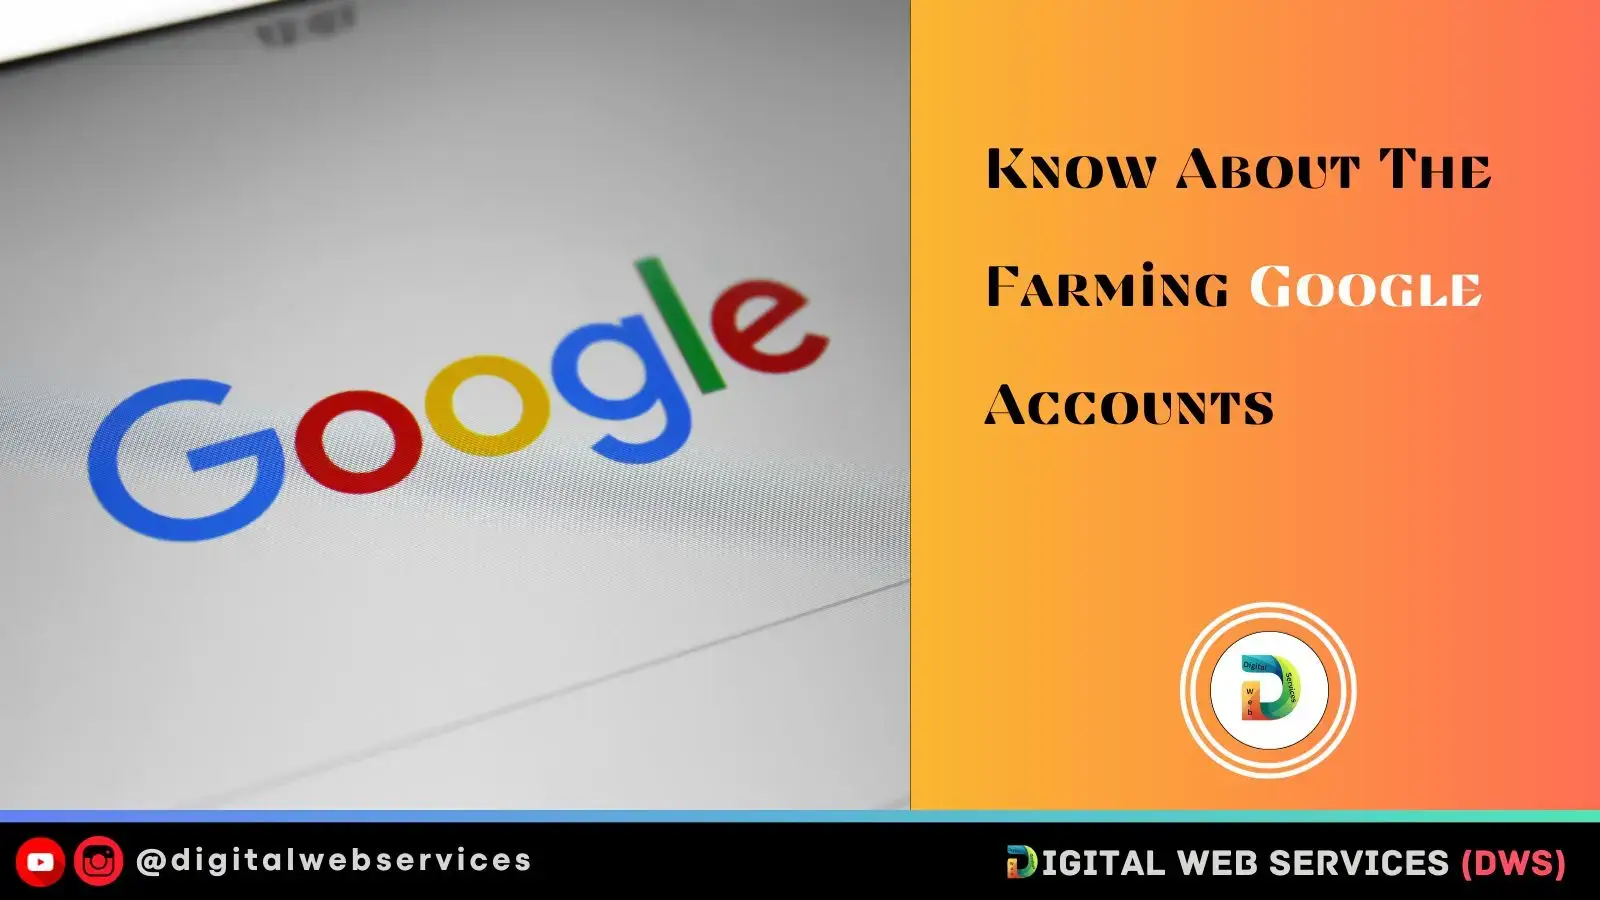 Farming Google Accounts